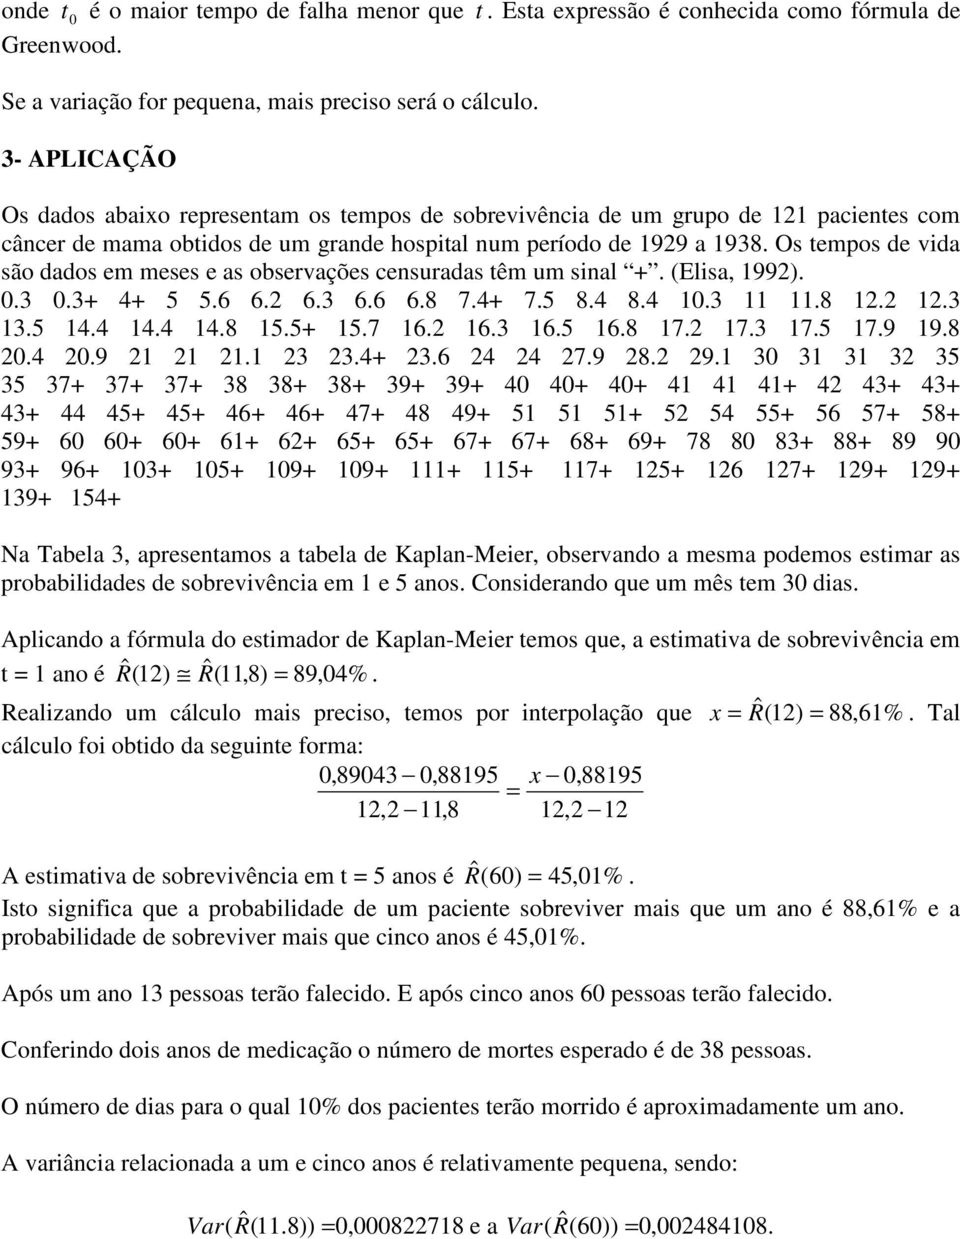 Os empos e via são aos em meses e as observações cesuraas êm um sial +. (Elisa, 992)..3.3+ 4+ 5 5.6 6.2 6.3 6.6 6.8 7.4+ 7.5 8.4 8.4.3.8 2.2 2.3 3.5 4.4 4.4 4.8 5.5+ 5.7 6.2 6.3 6.5 6.8 7.2 7.3 7.5 7.